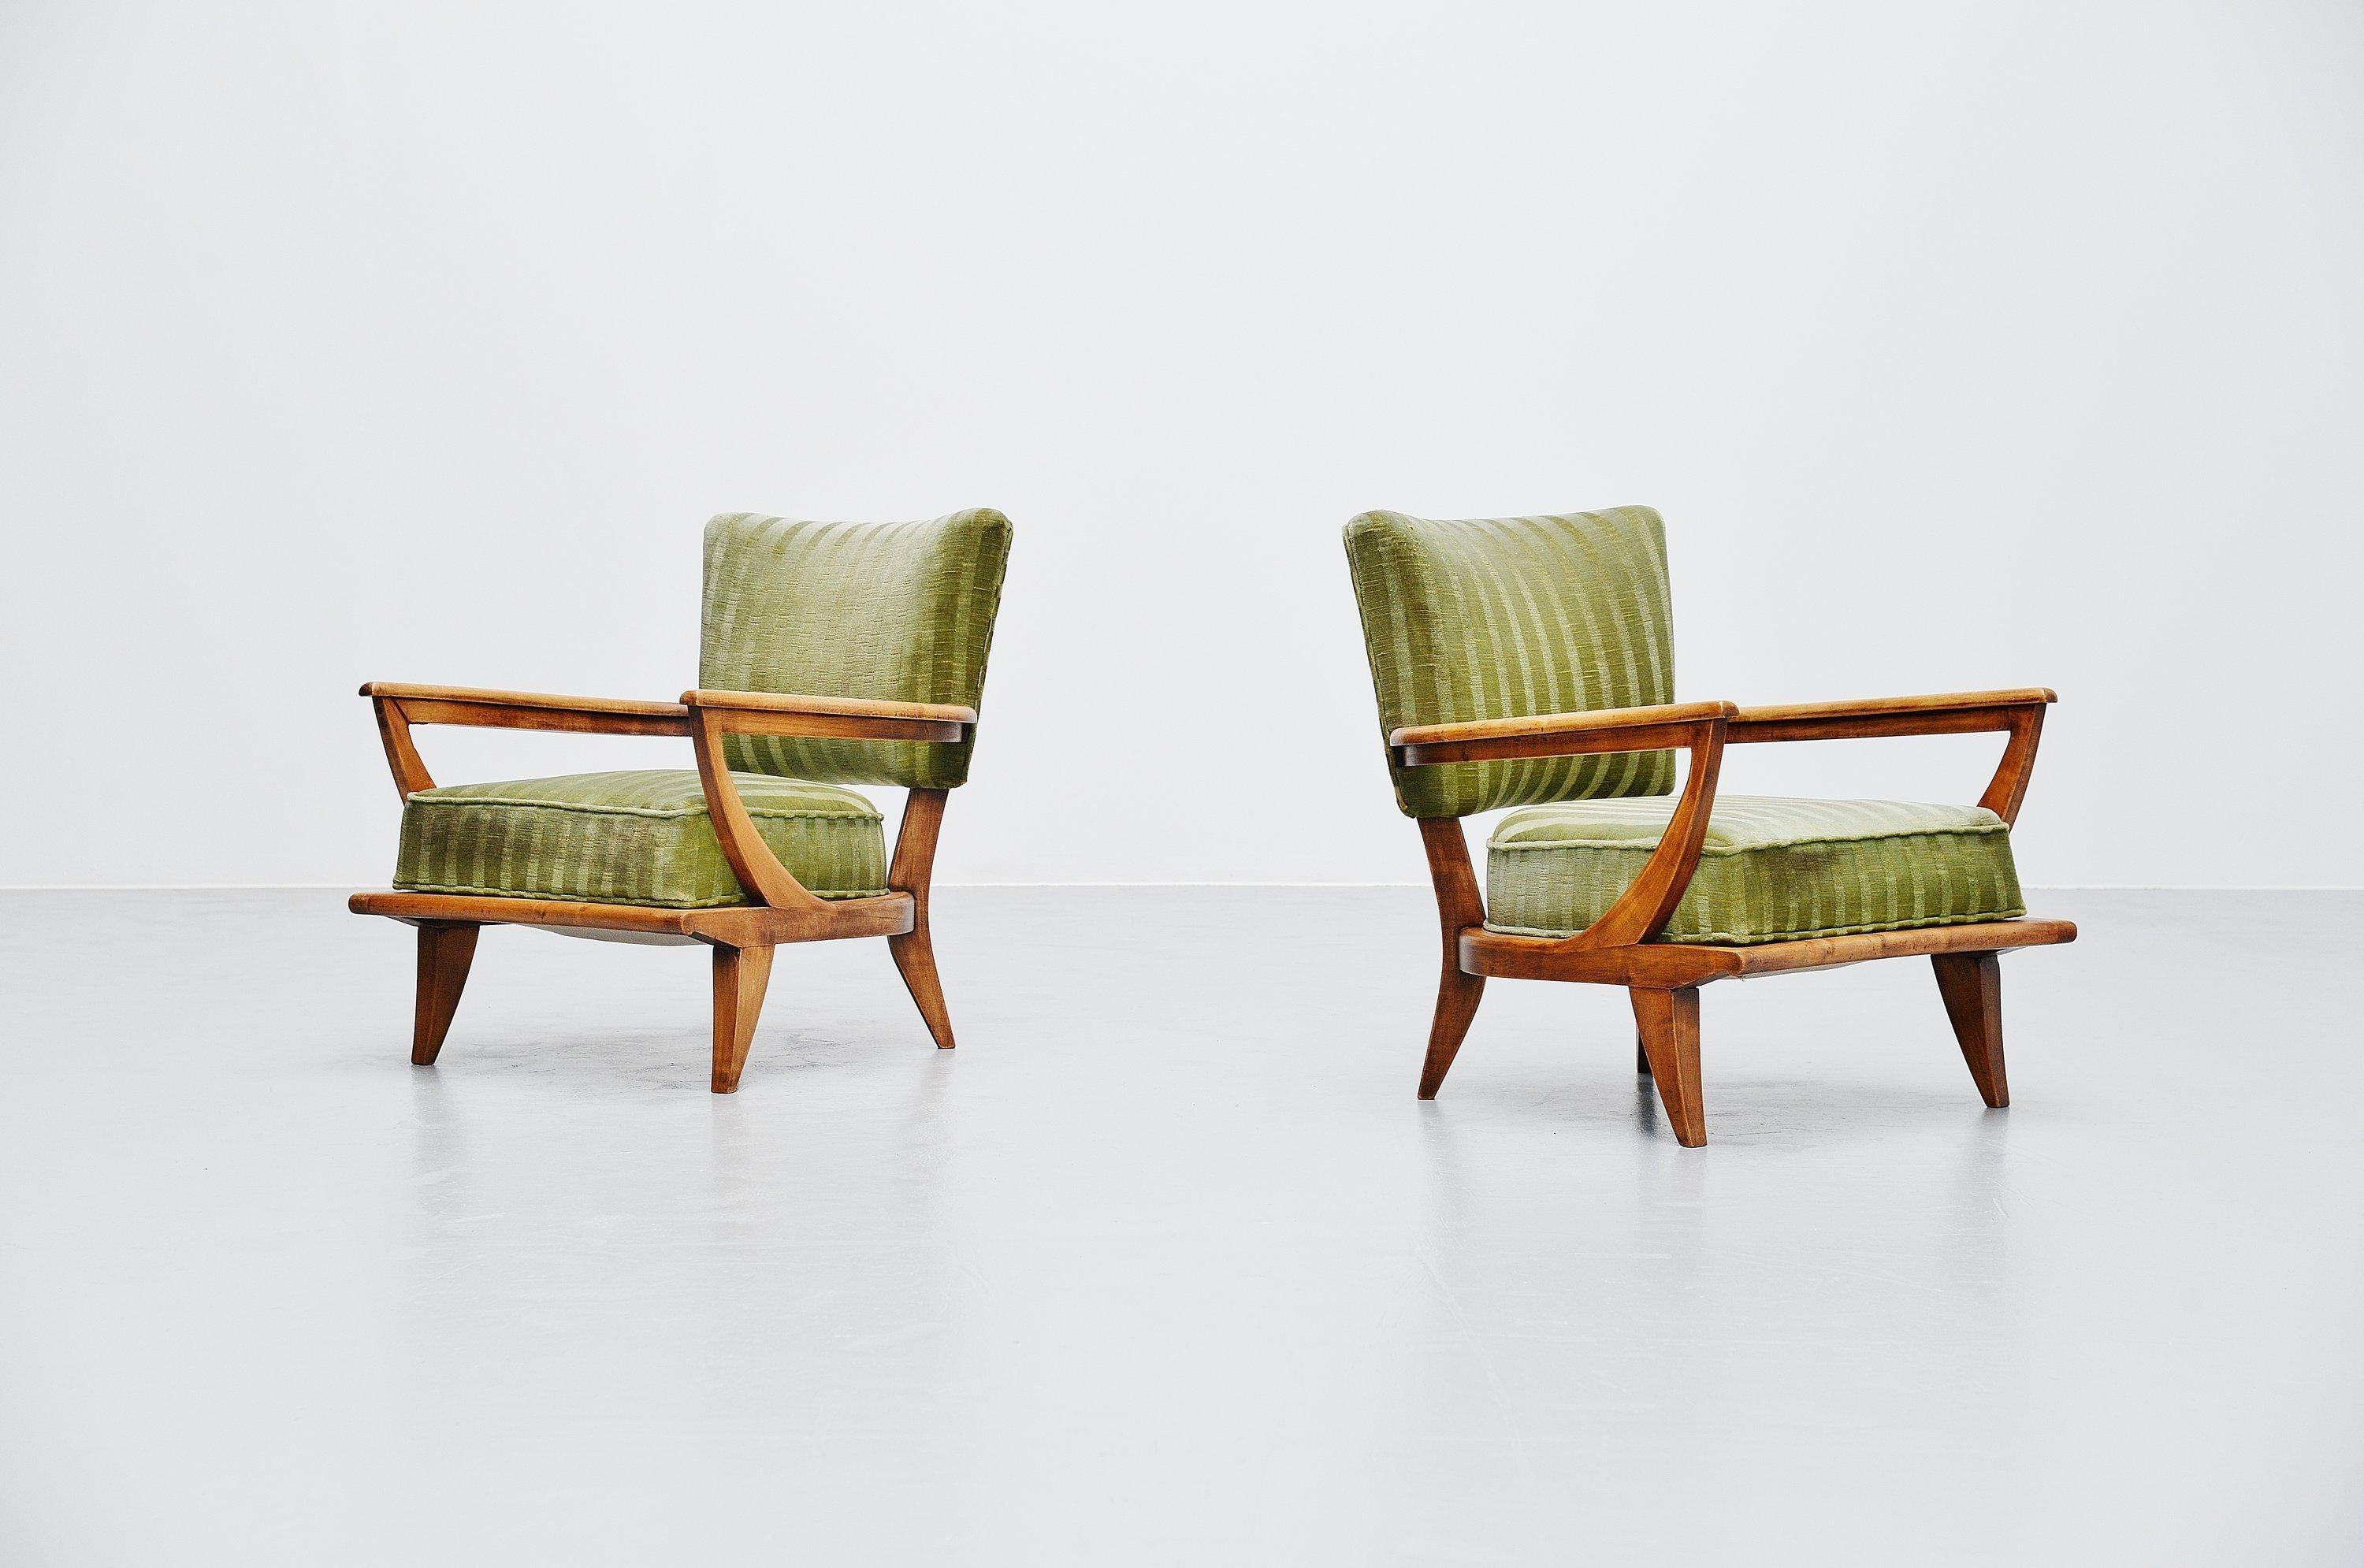 Fabuleuse paire de chaises longues modèle SK40 conçue par Etienne-Henri Martin et fabriquée par Steiner, France, 1952. Ces chaises ont un cadre en hêtre massif avec une étonnante patine d'ancienneté. Ils ont également conservé leur revêtement